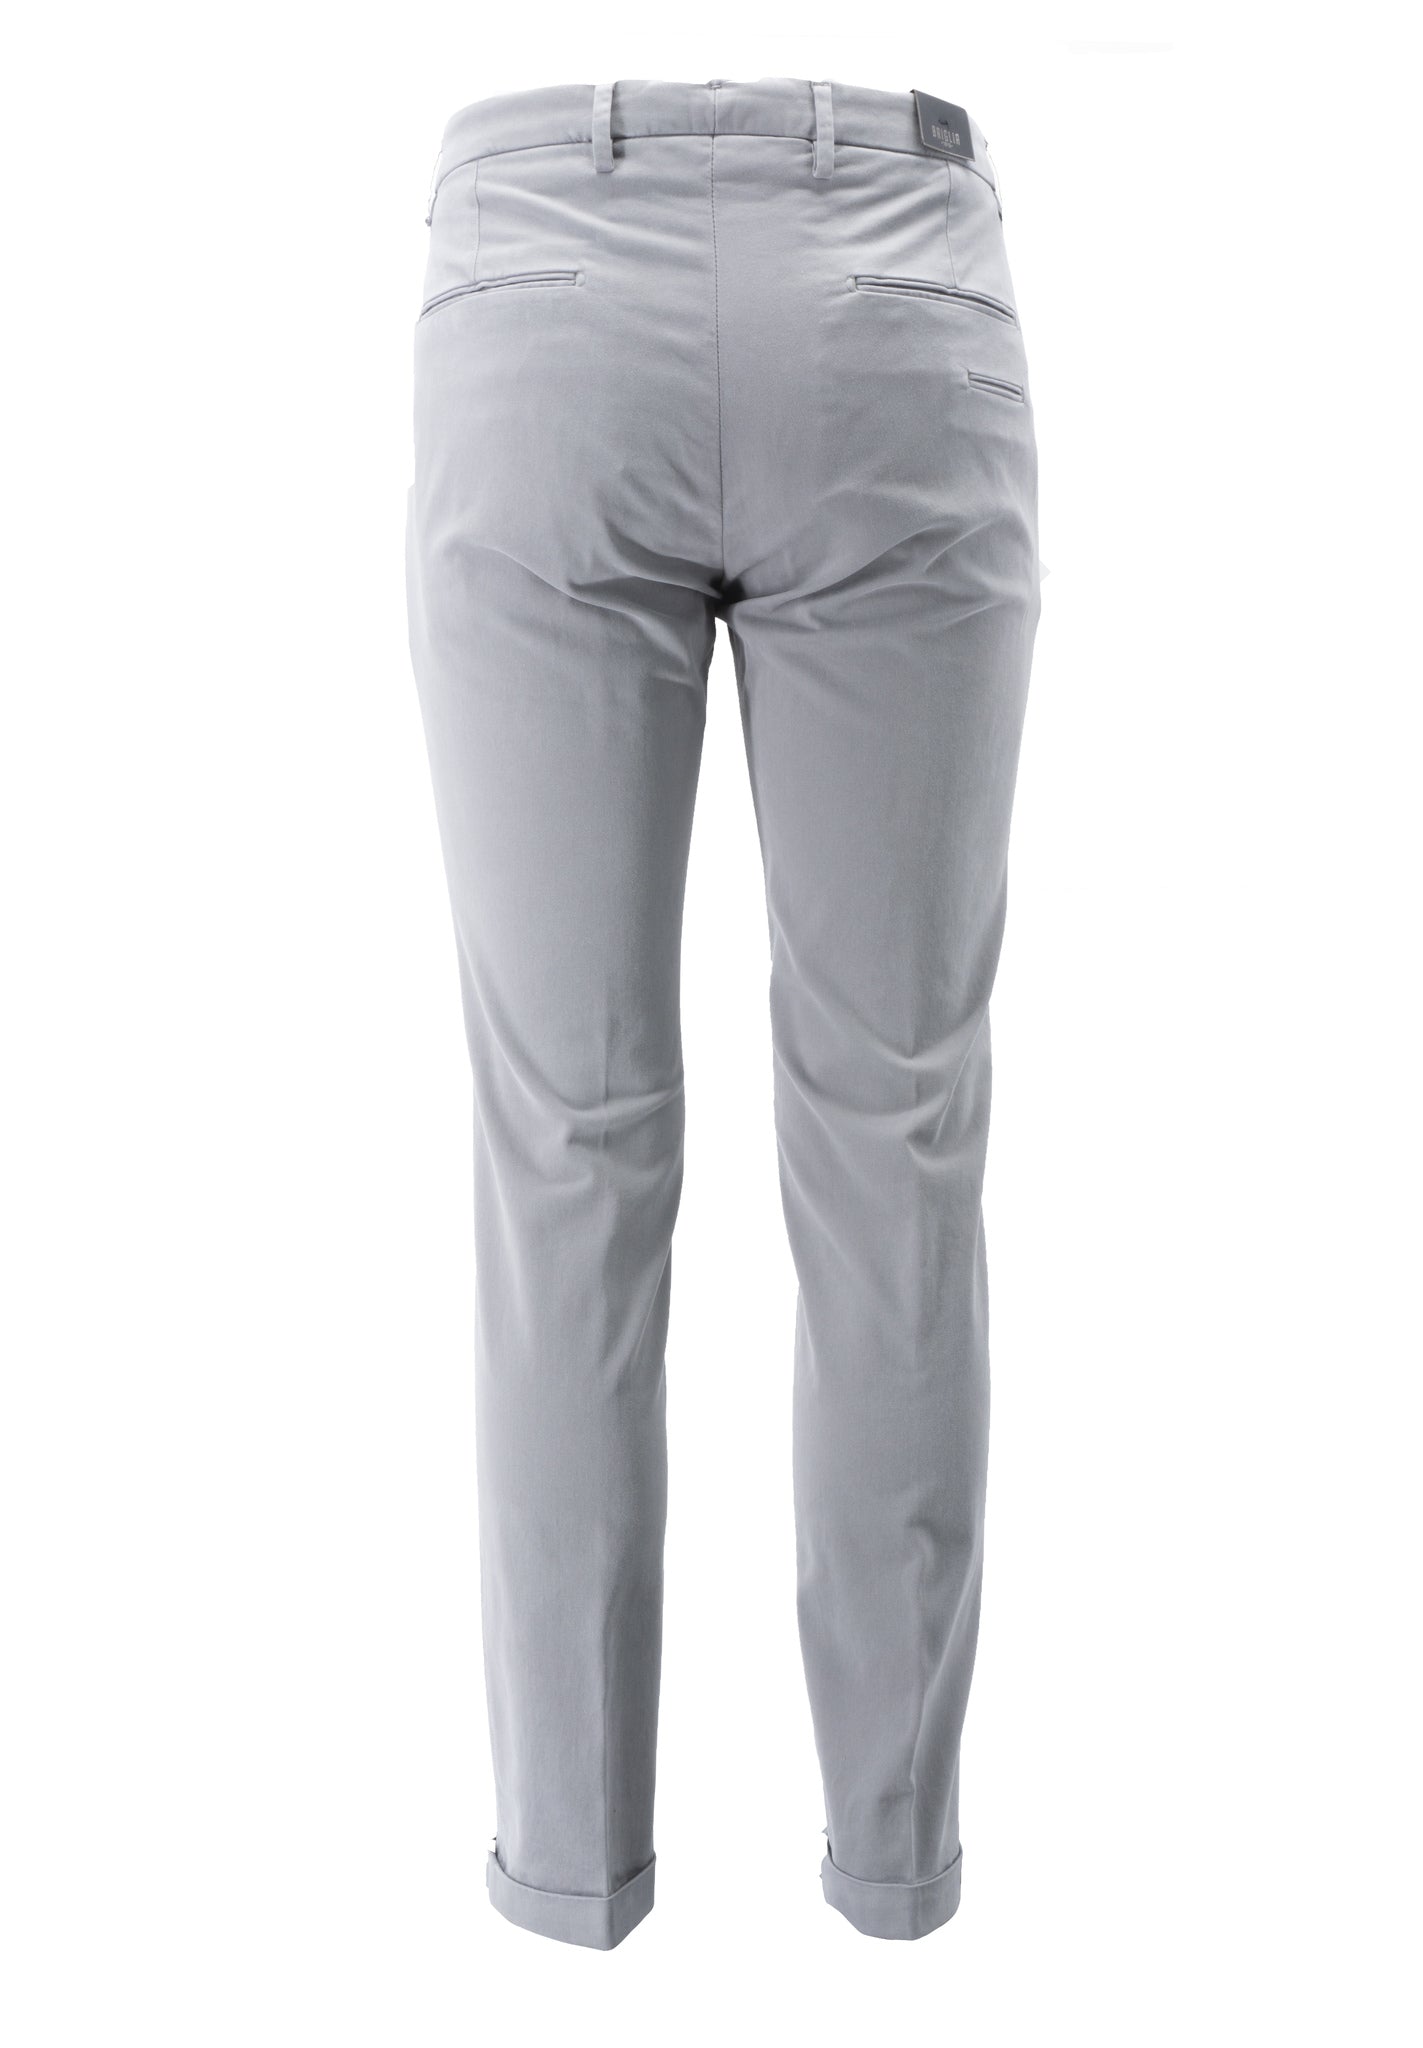 Pantalone Tasca America in Raso / Grigio - Ideal Moda